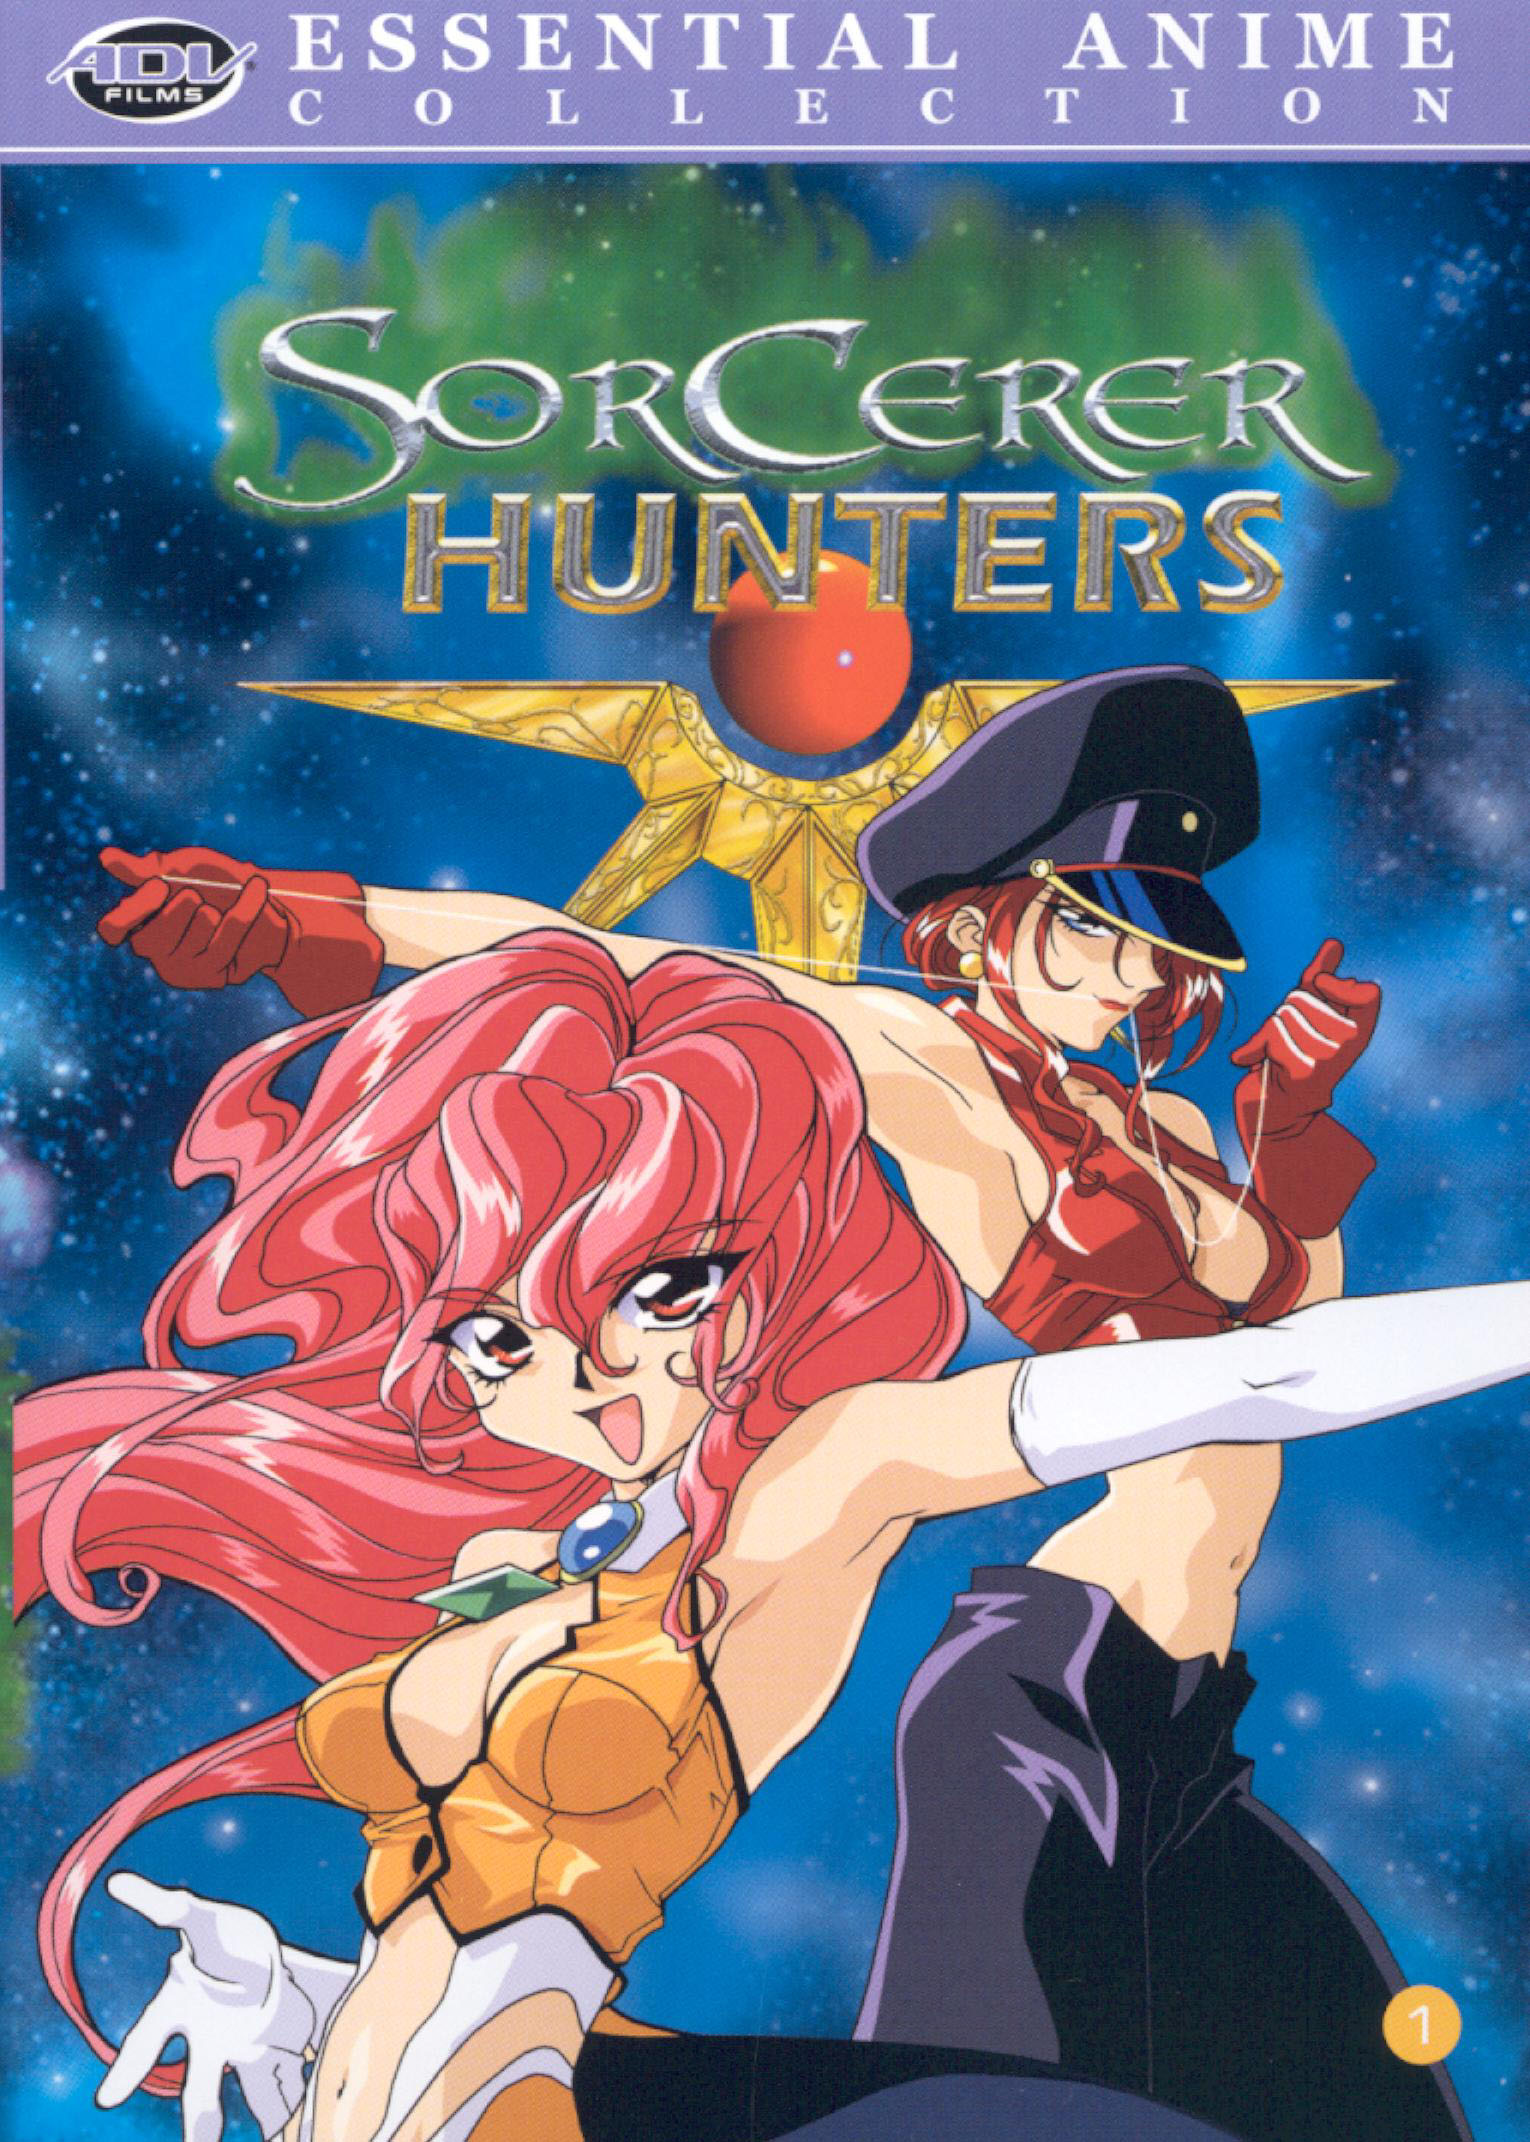 Sorcerer hunters